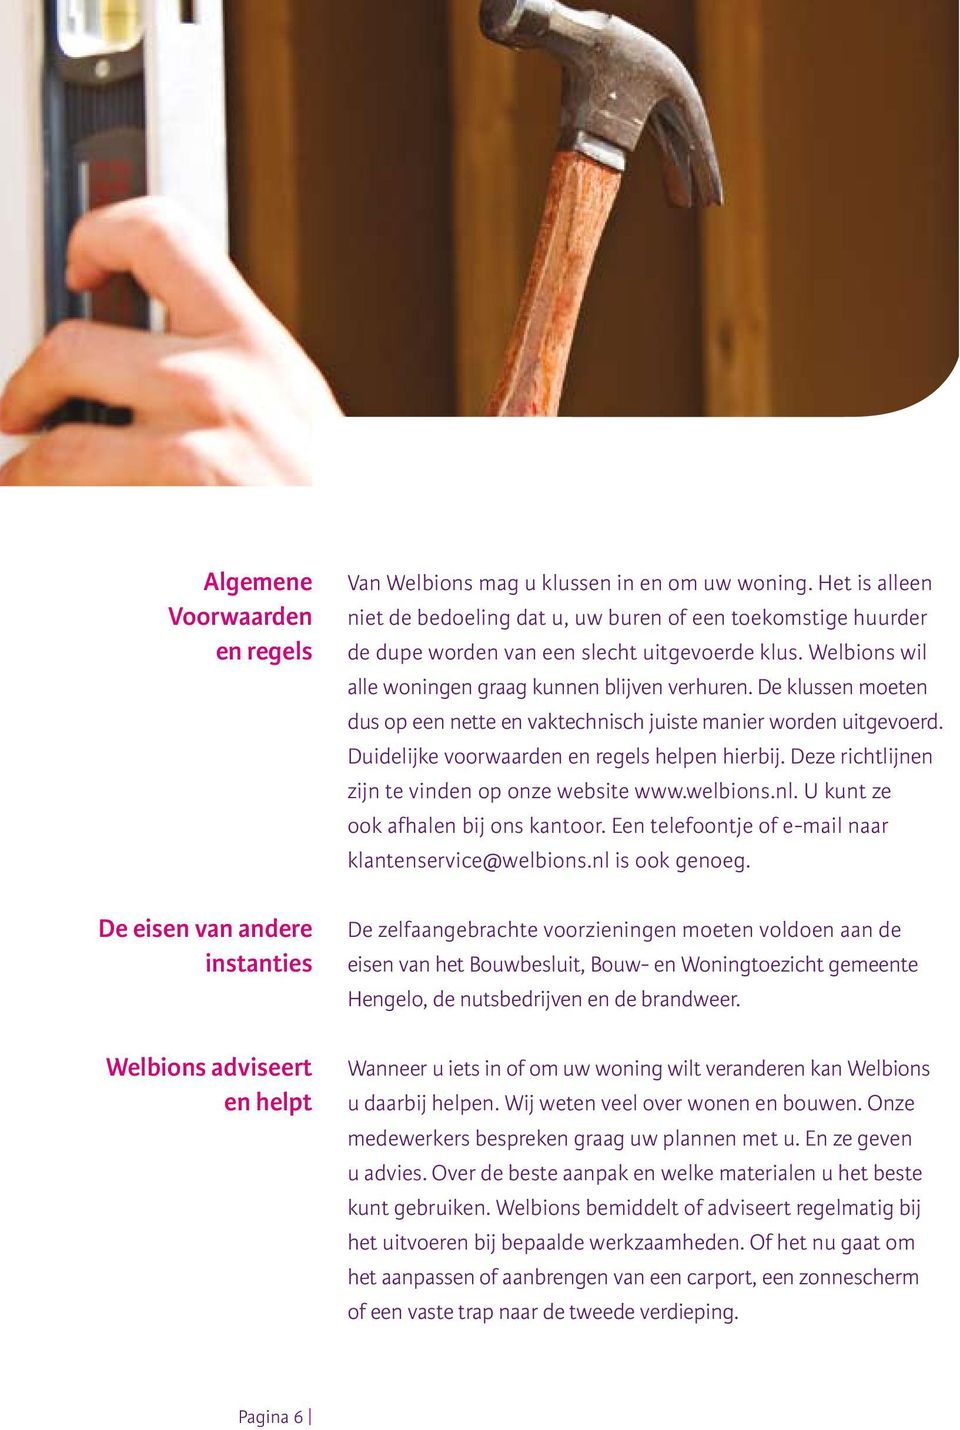 Deze richtlijnen zijn te vinden op onze website www.welbions.nl. U kunt ze ook afhalen bij ons kantoor. Een telefoontje of e-mail naar klantenservice@welbions.nl is ook genoeg.